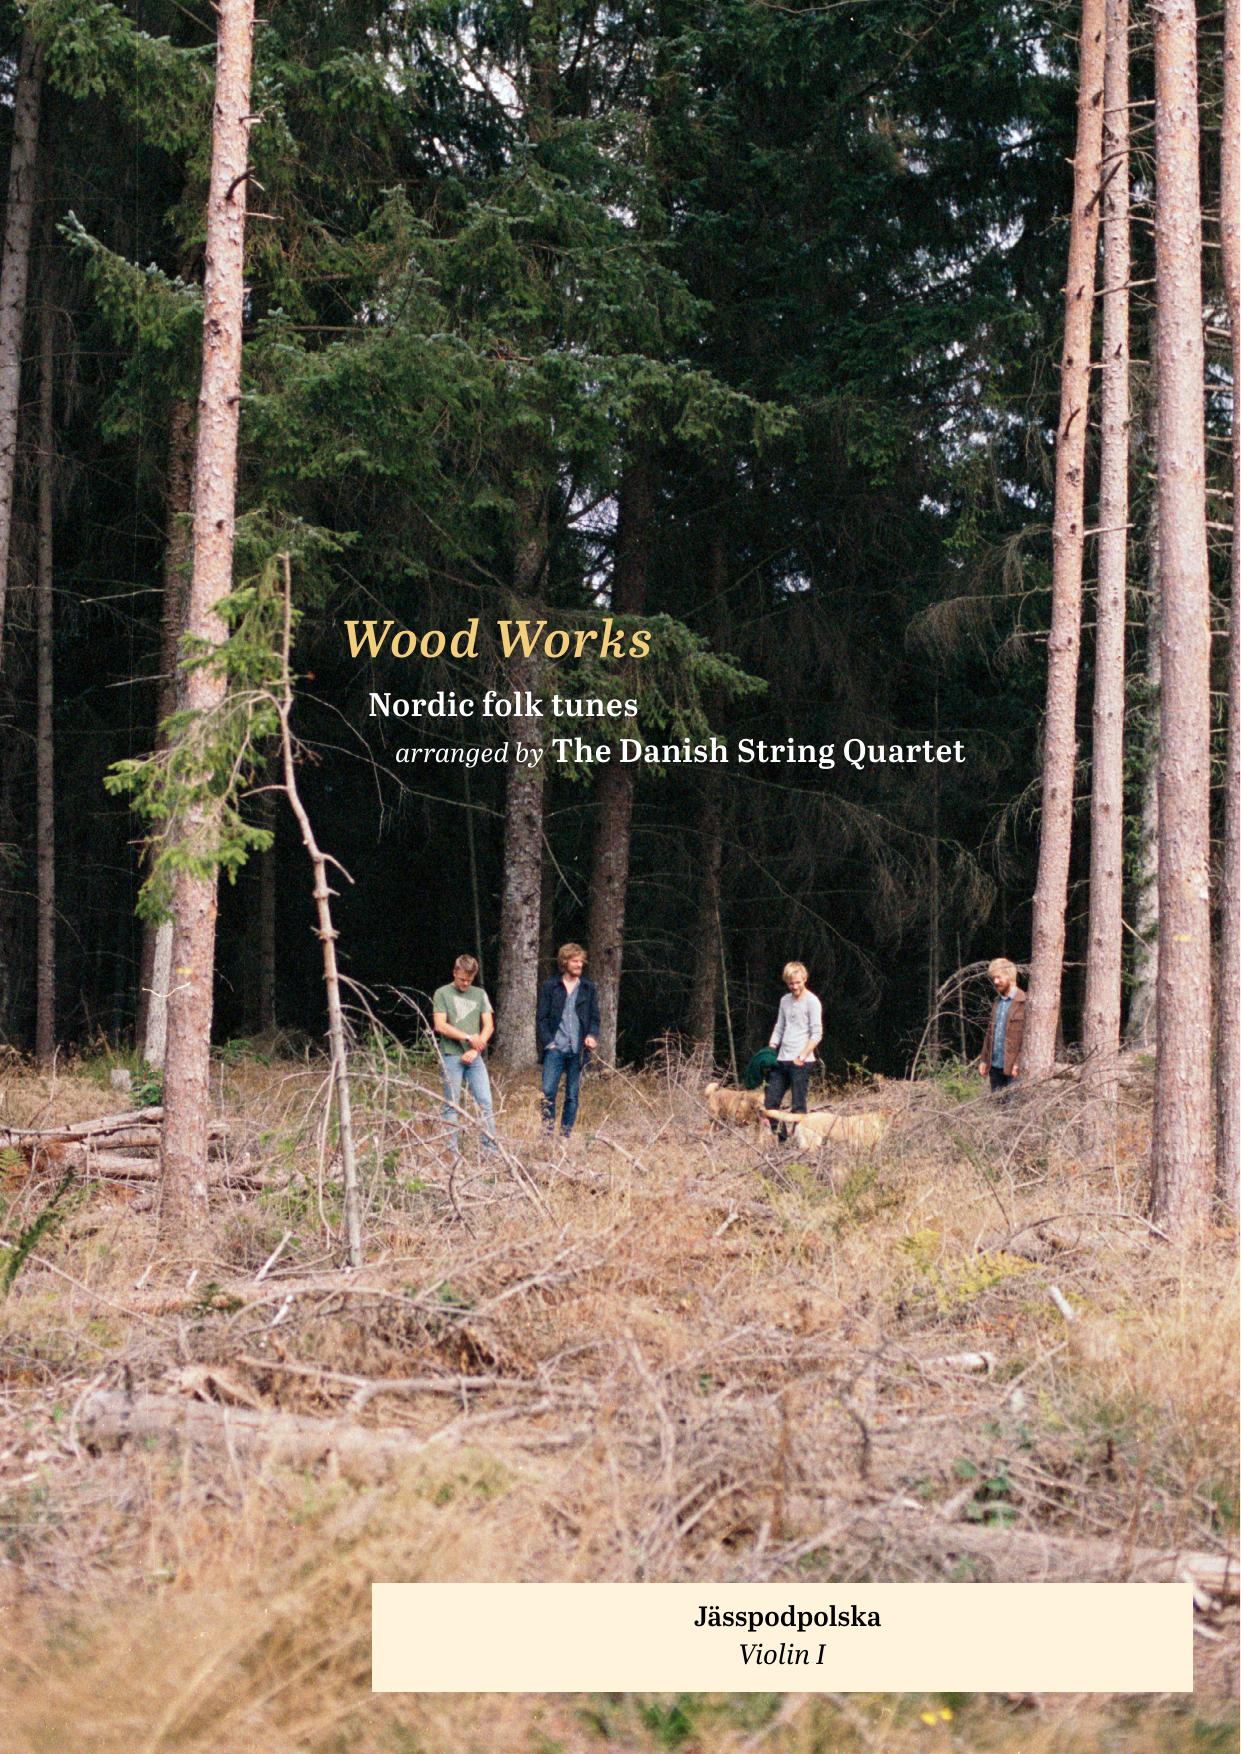 Wood Works – Jässpodpolska